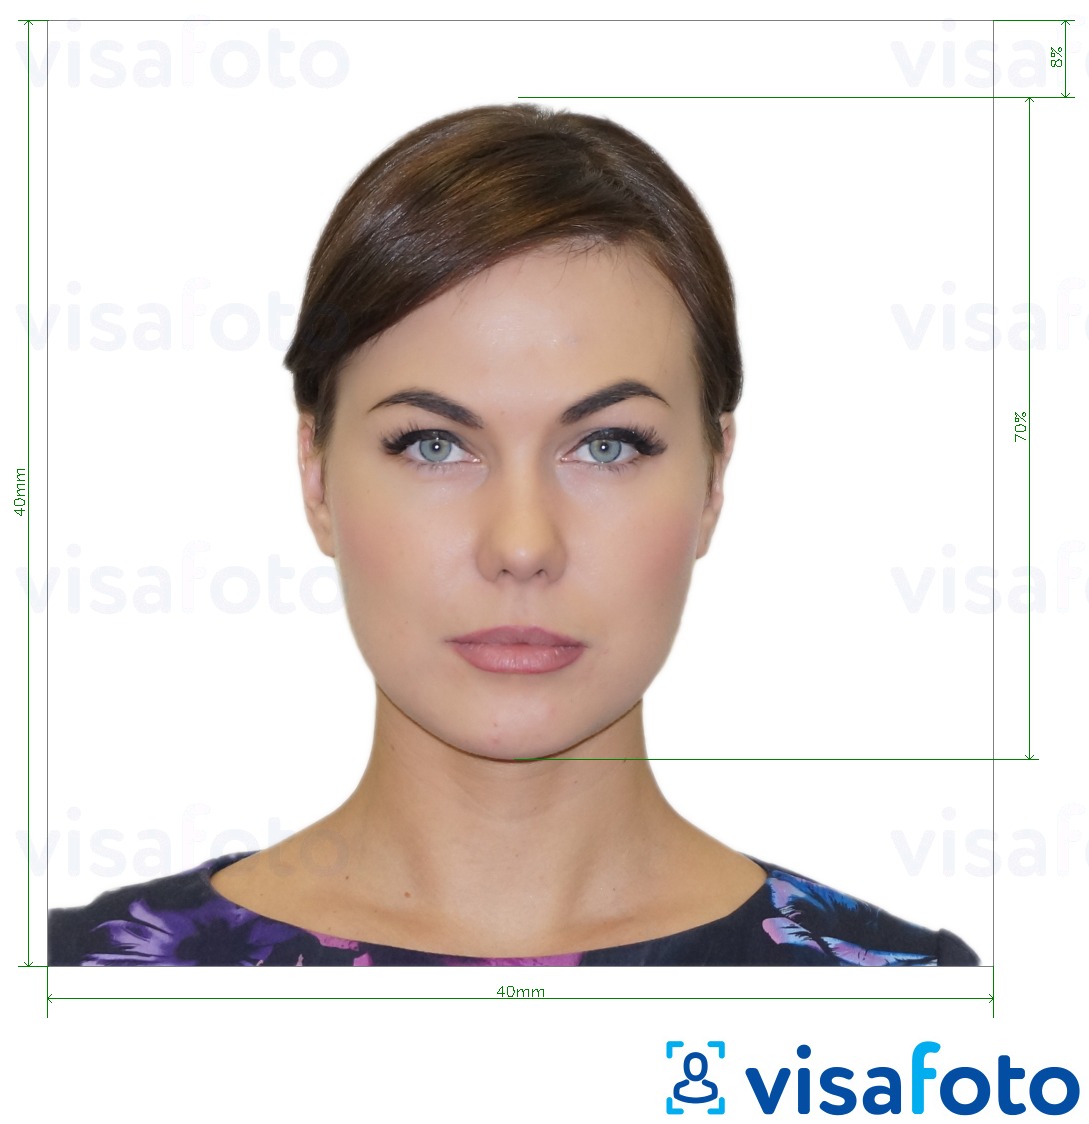 Exemples sur des photos pour Visa Argentine 4x4 cm (40x40 mm) avec les spécifications de taille exactes